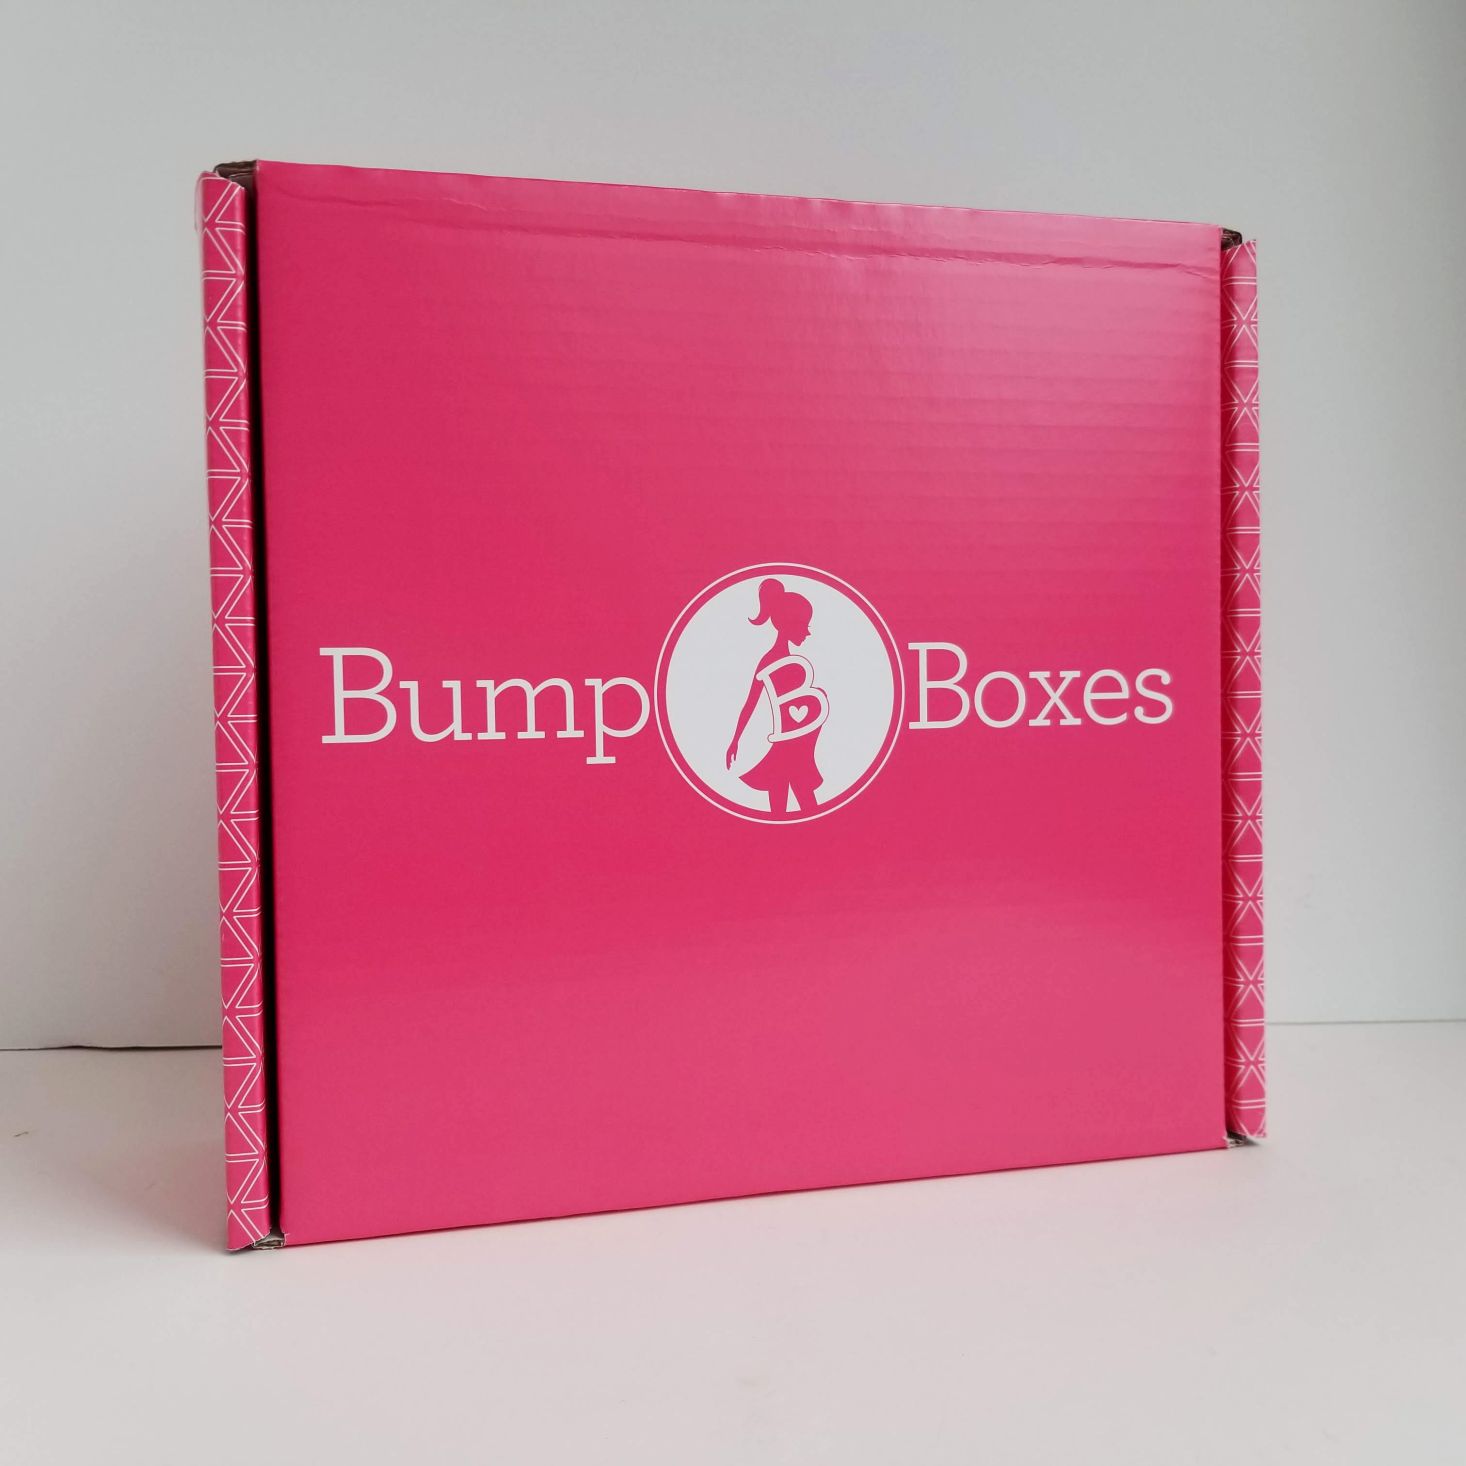 Bump Boxes Subscription Review Coupon April 2020 Msa